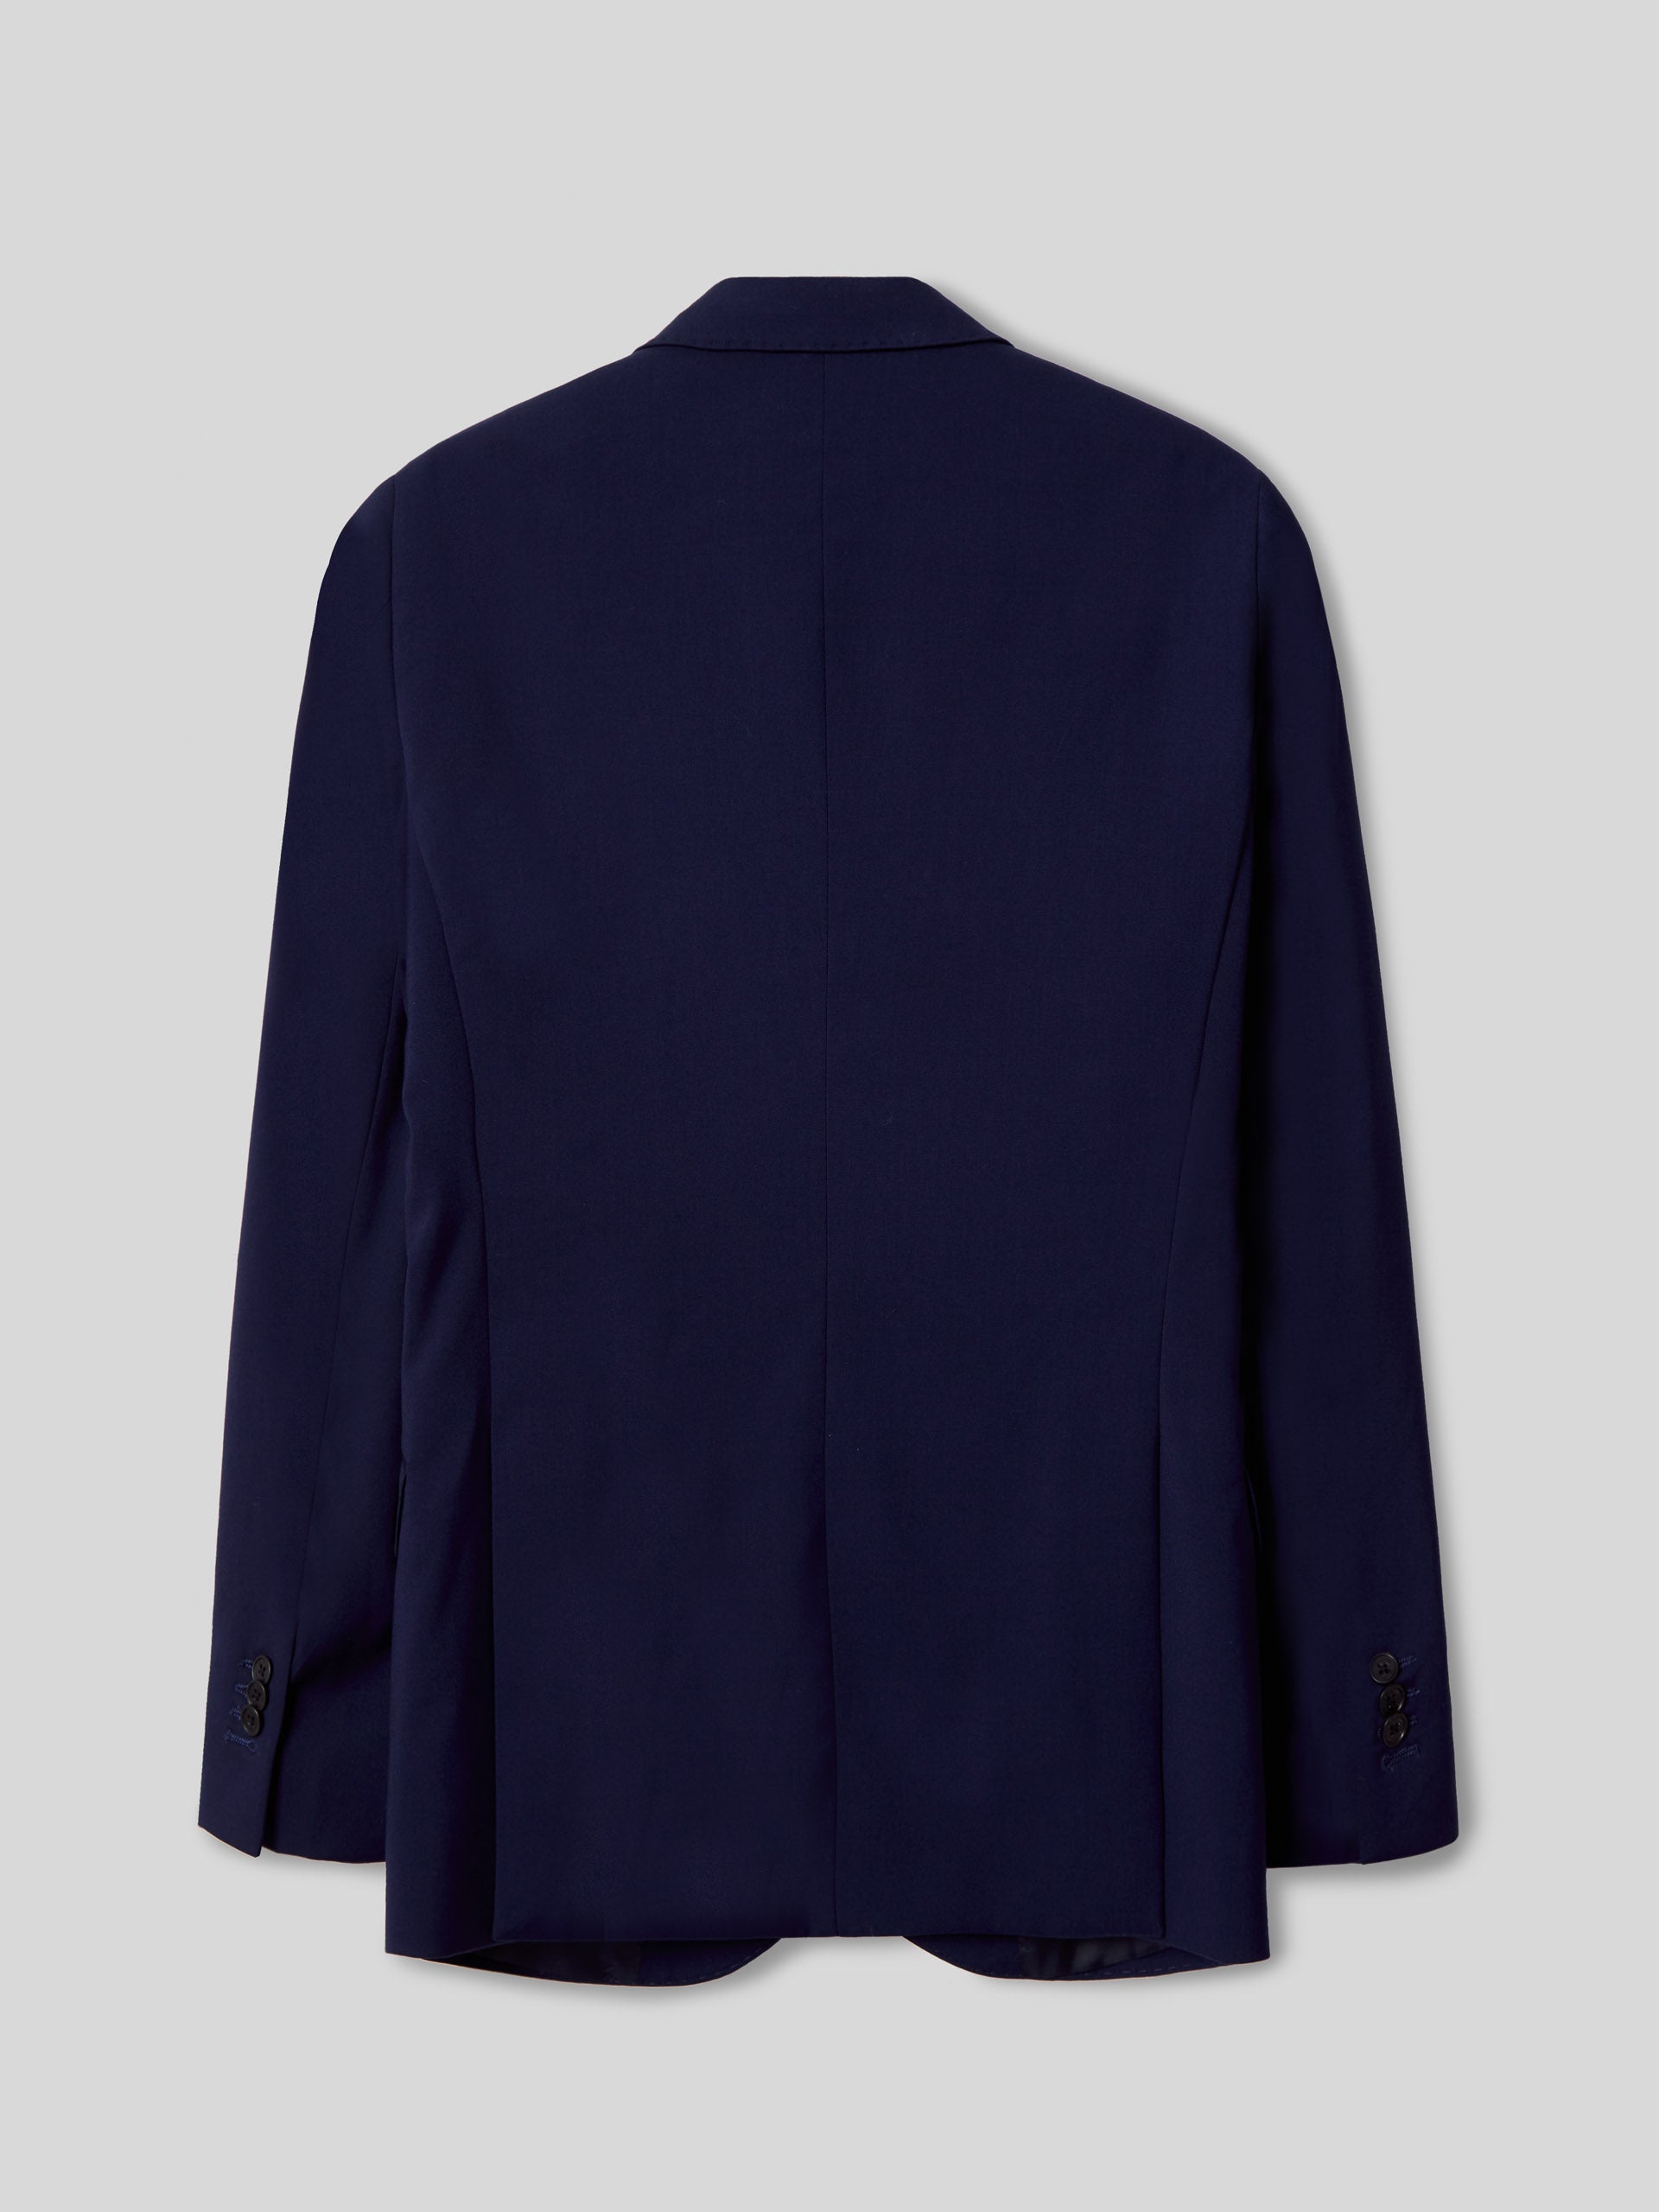 Medium blue essential suit jacket